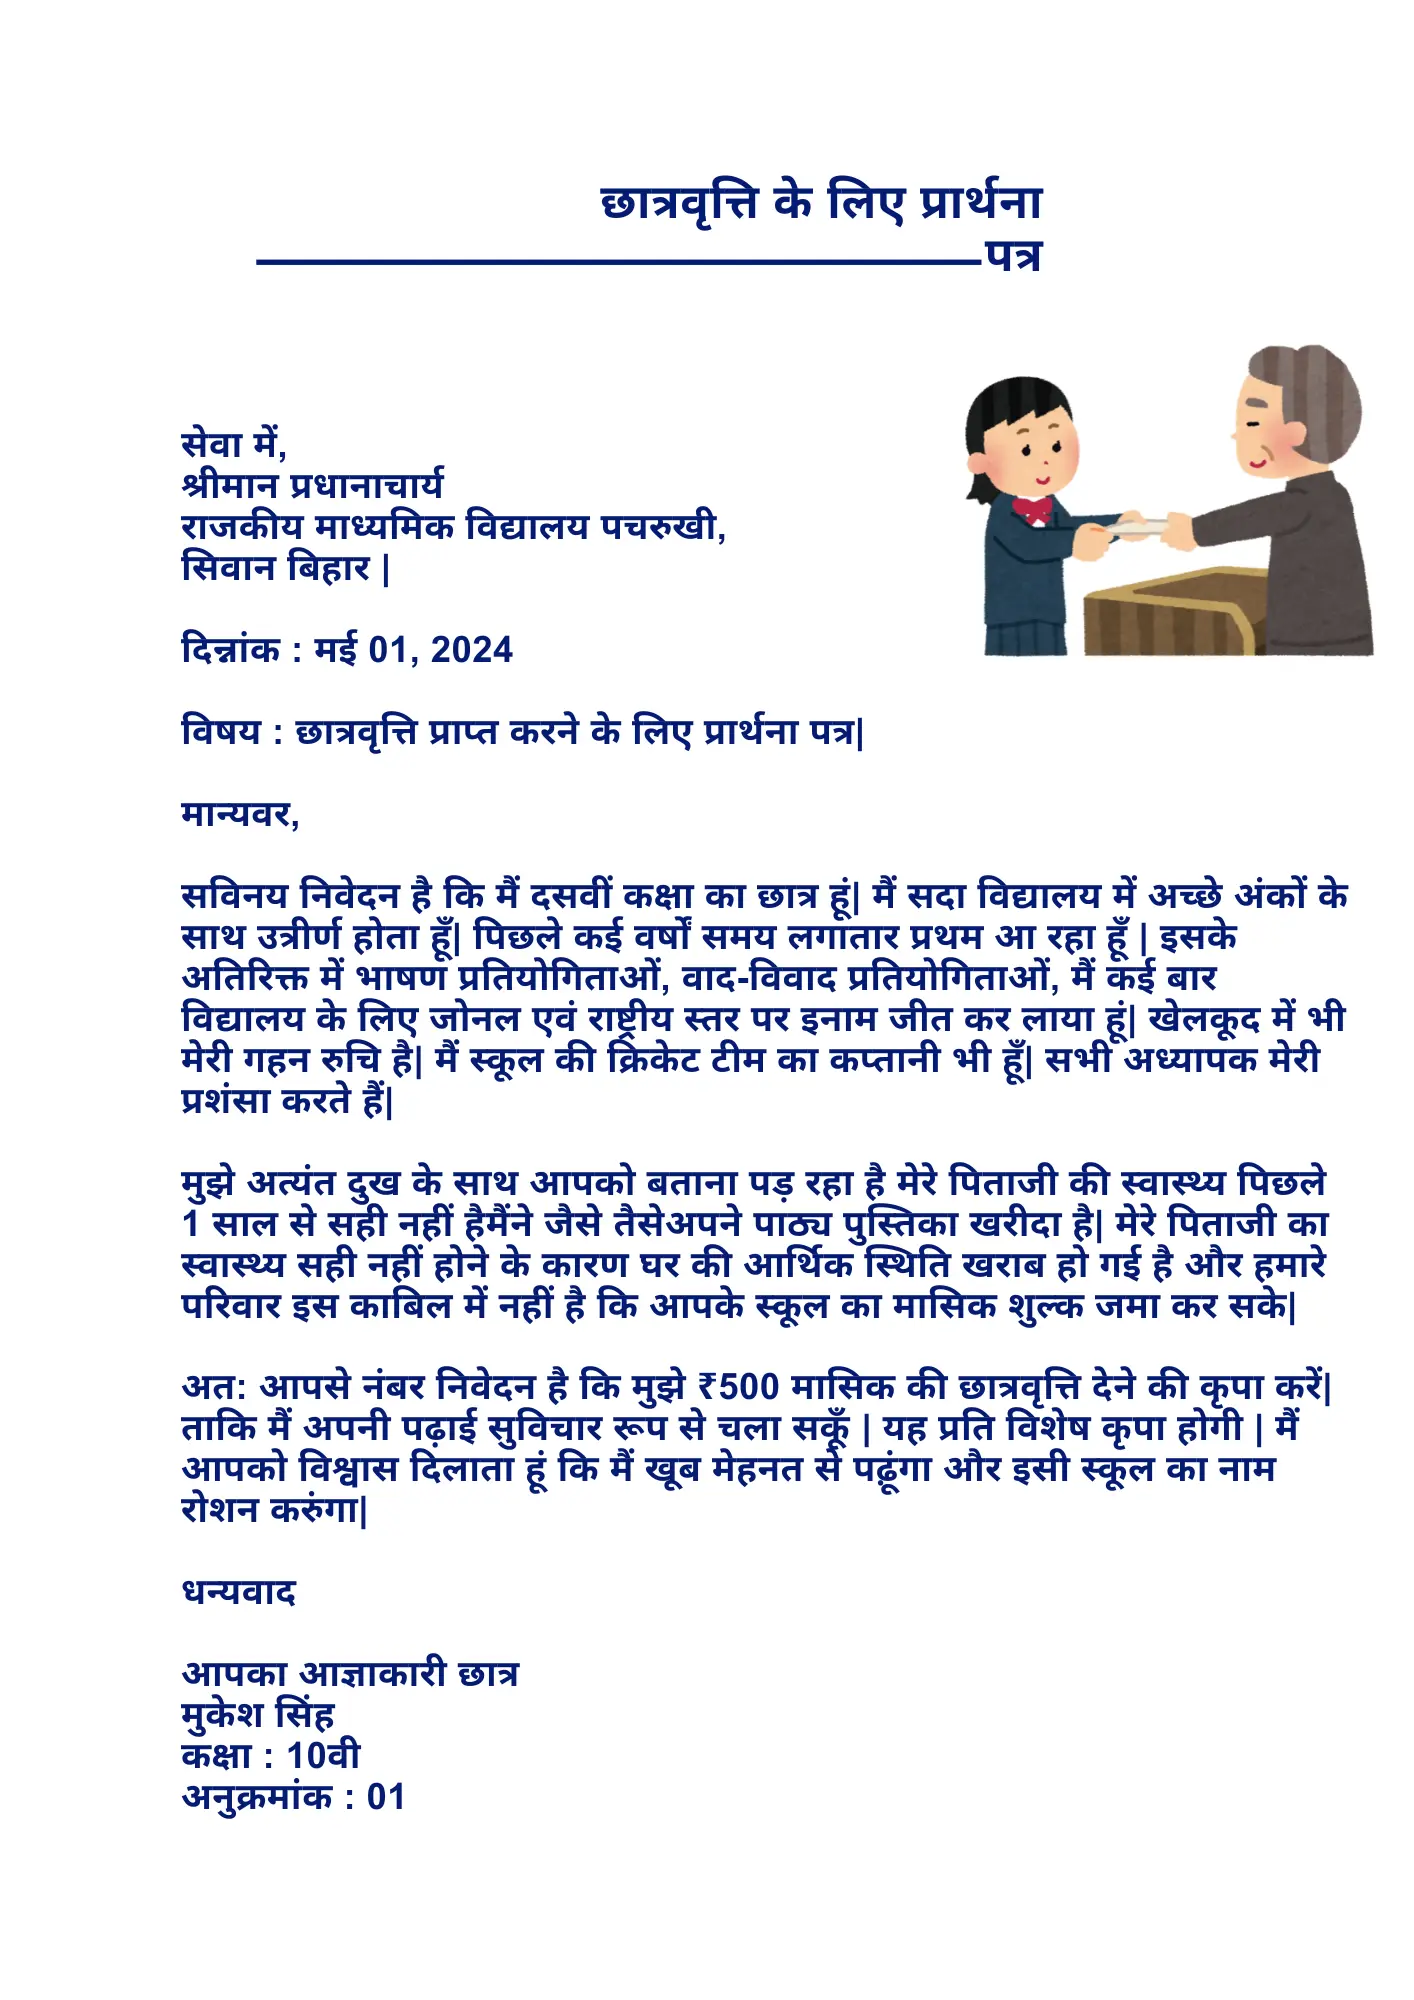 छात्रवृत्ति के लिए प्रार्थना पत्र Chatravriti application in Hindi